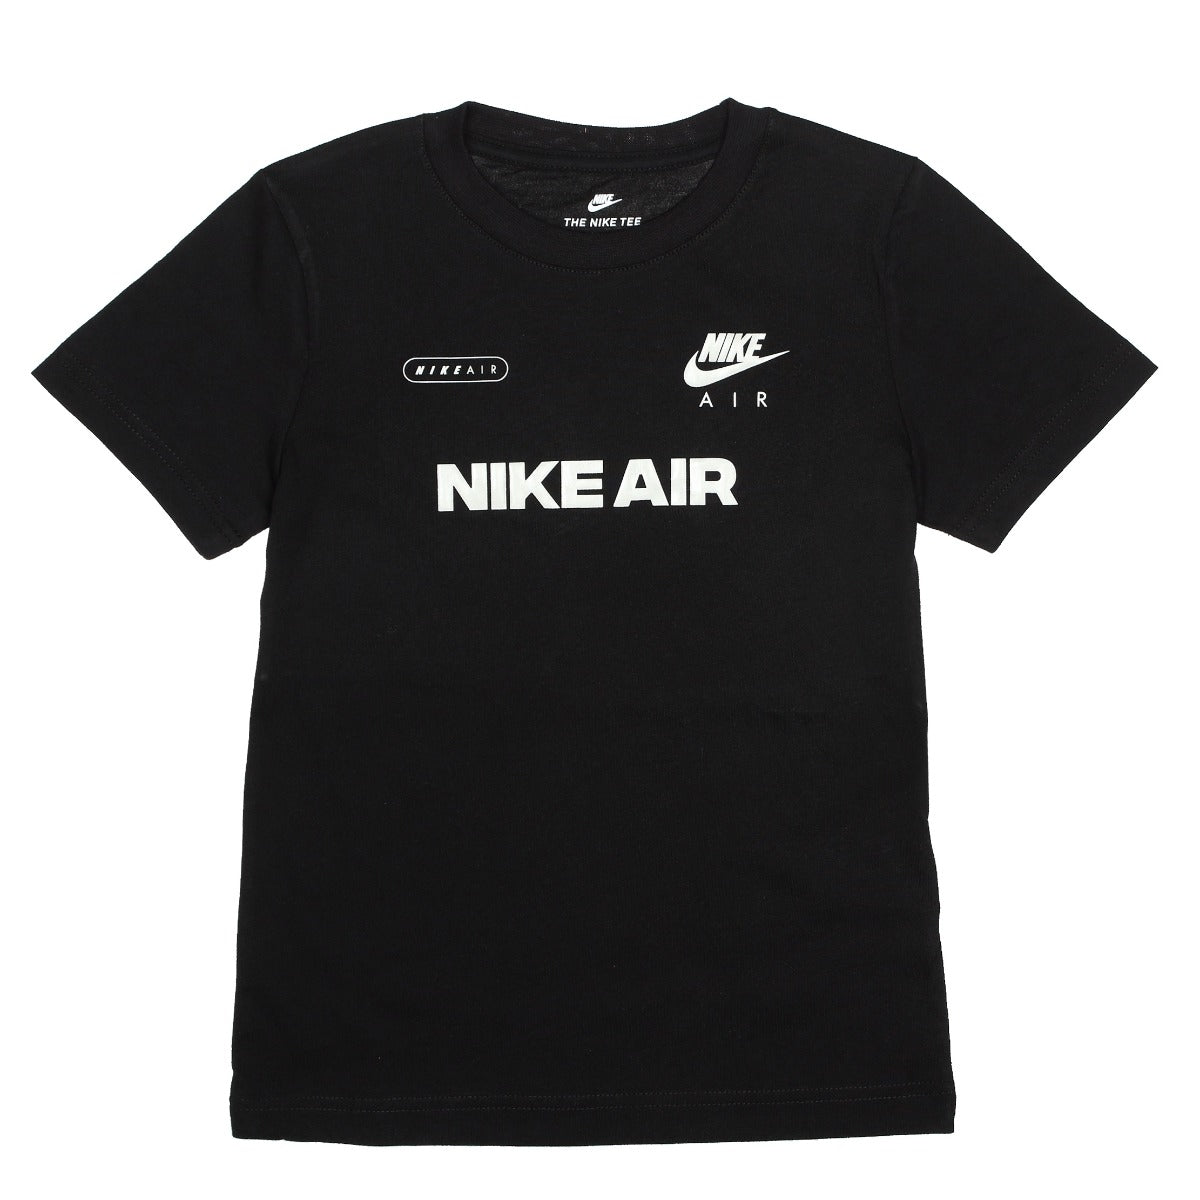 Nike Air T-Shirt Kinder - Schwarz/Weiß